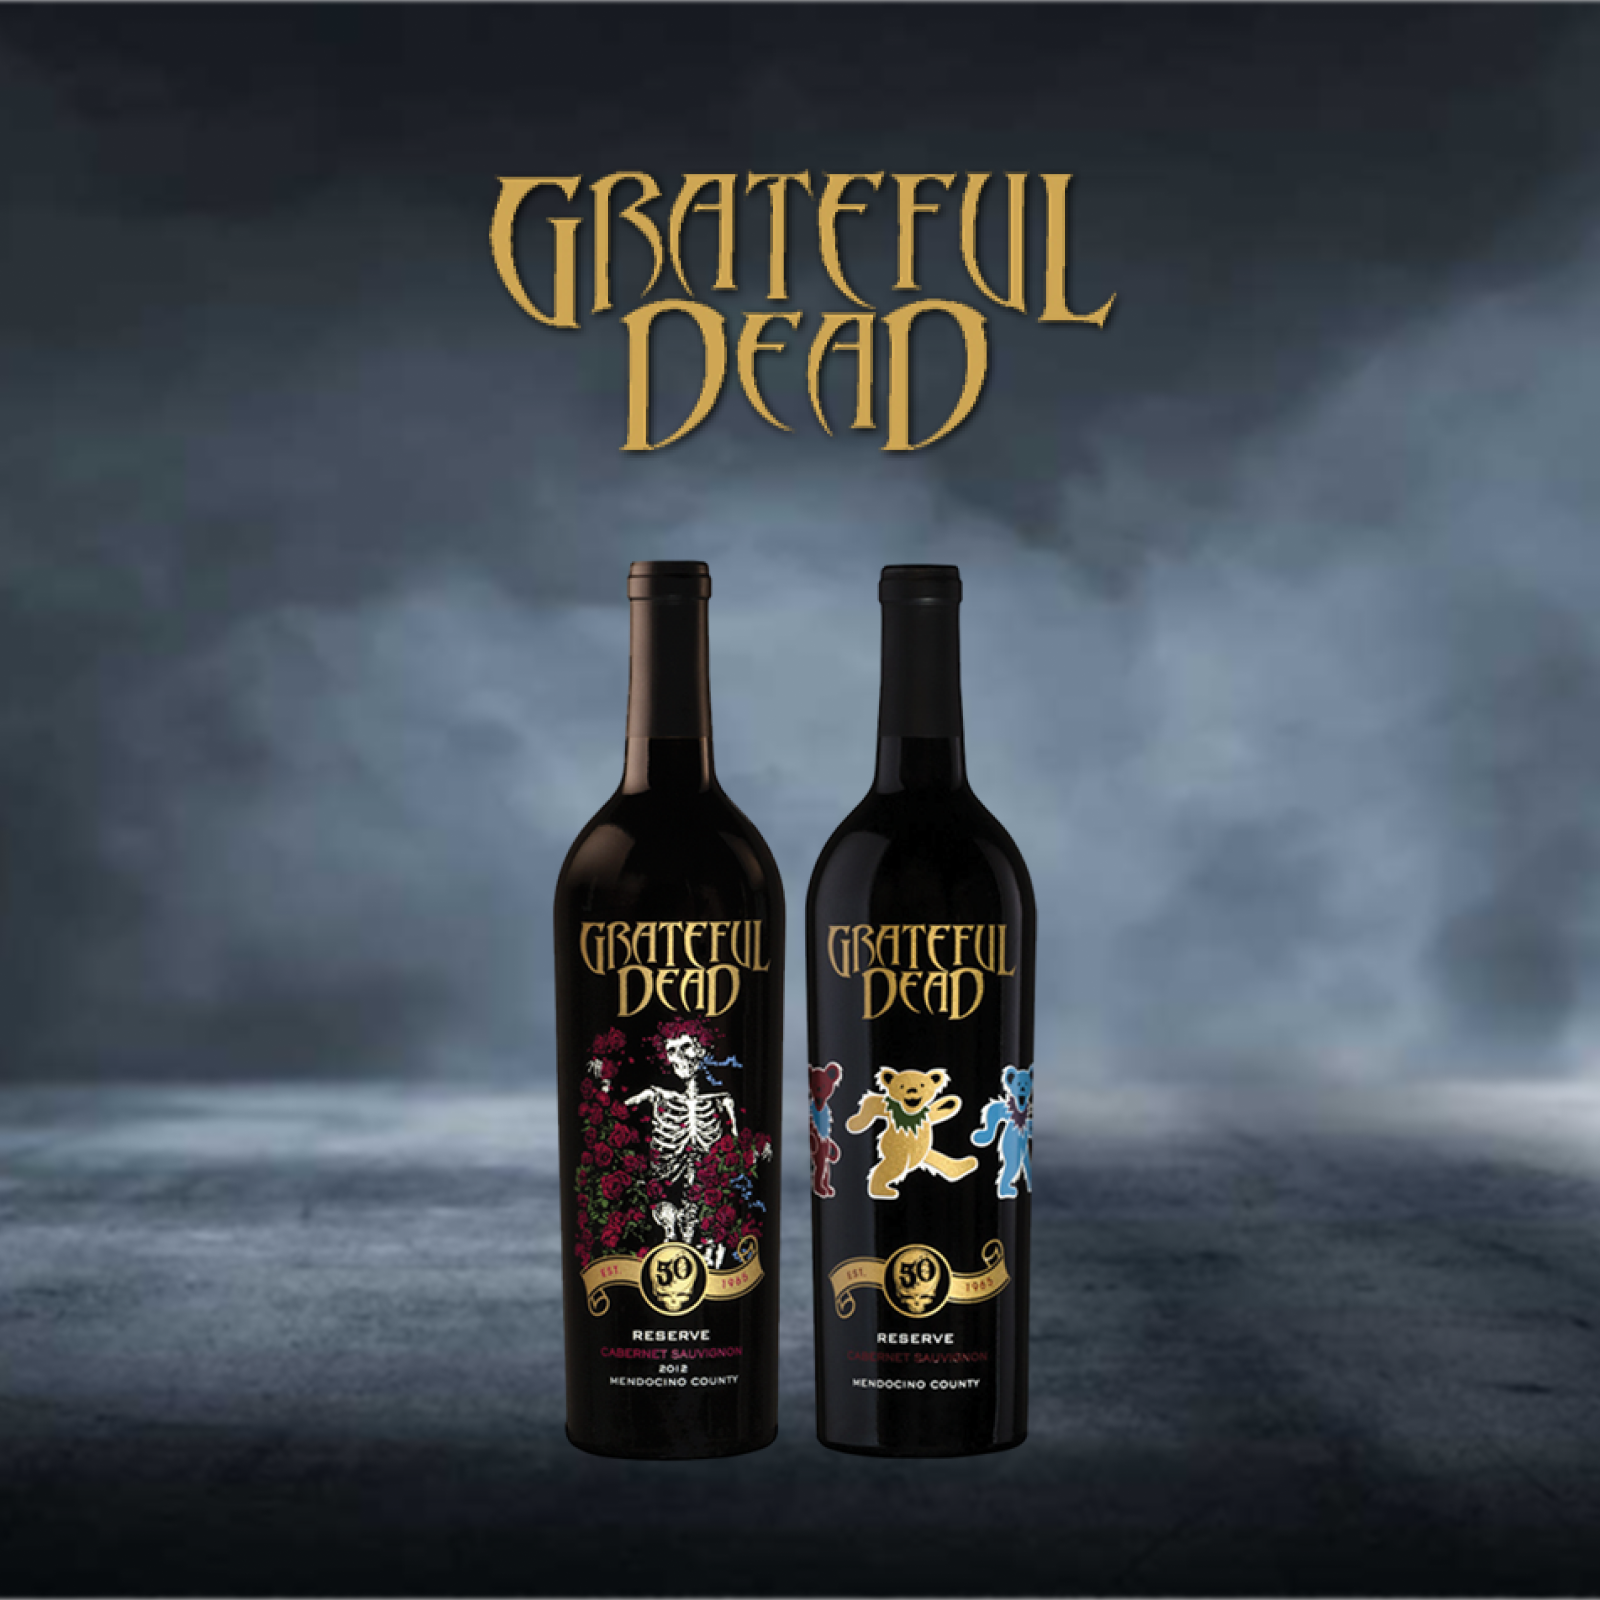 2 Grateful Dead branded wine bottles